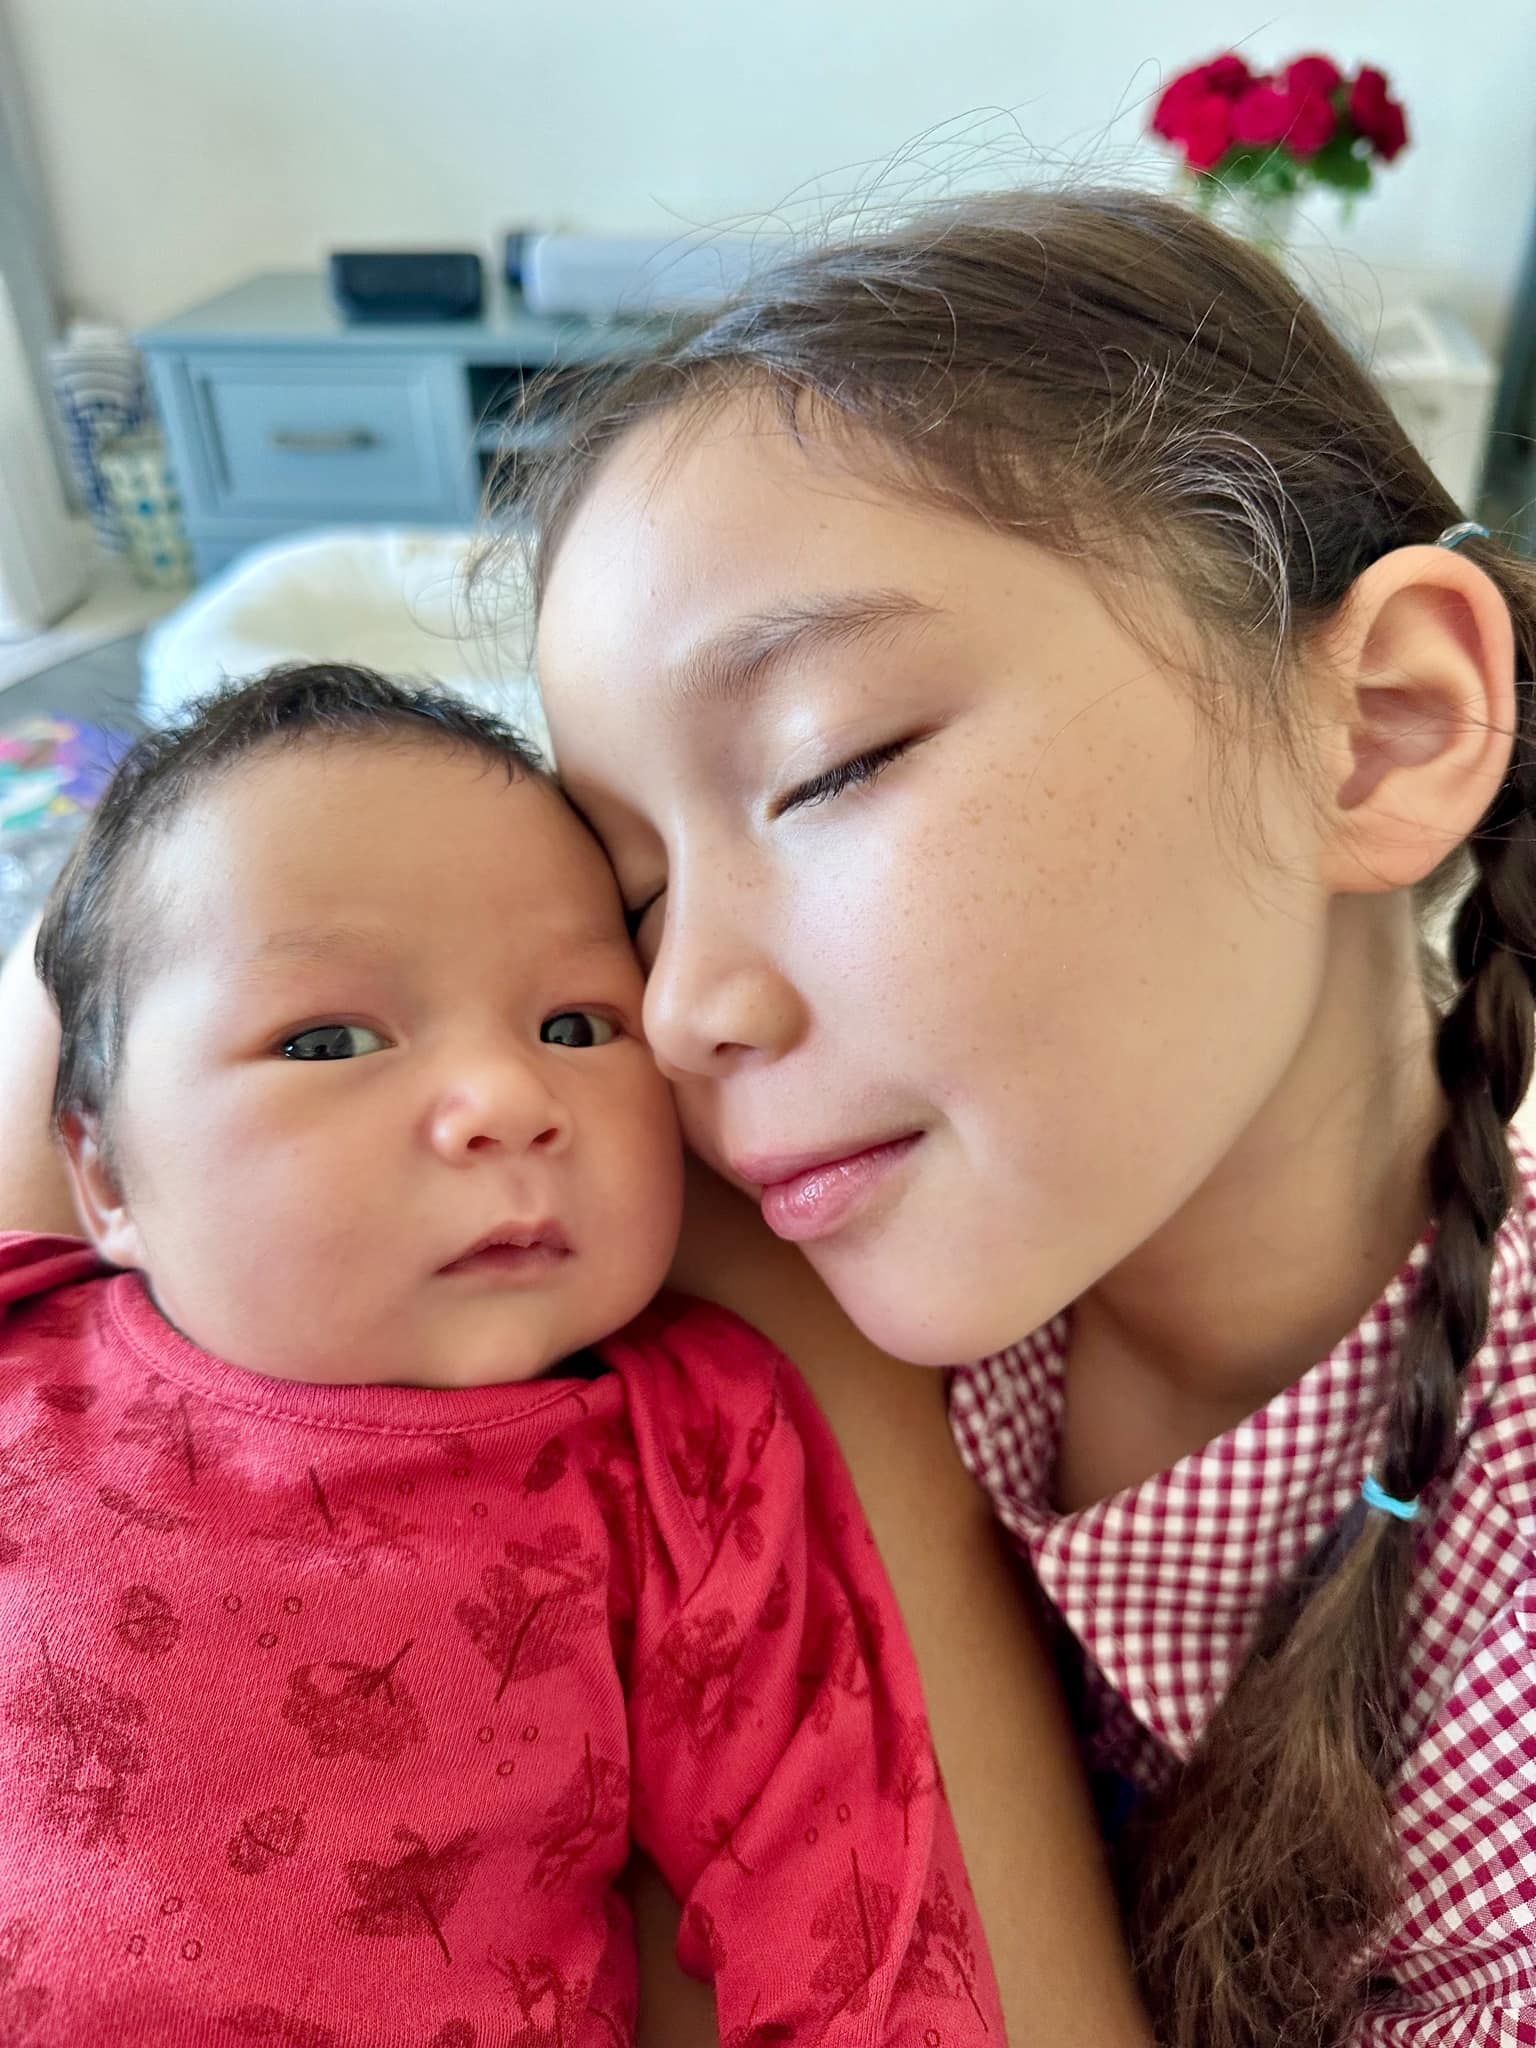 Khoảnh khắc siêu cưng của hai nhóc tỳ nhà siêu mẫu Hà Anh, con trai mới hơn 1 tháng tuổi đã được mẹ khen: 